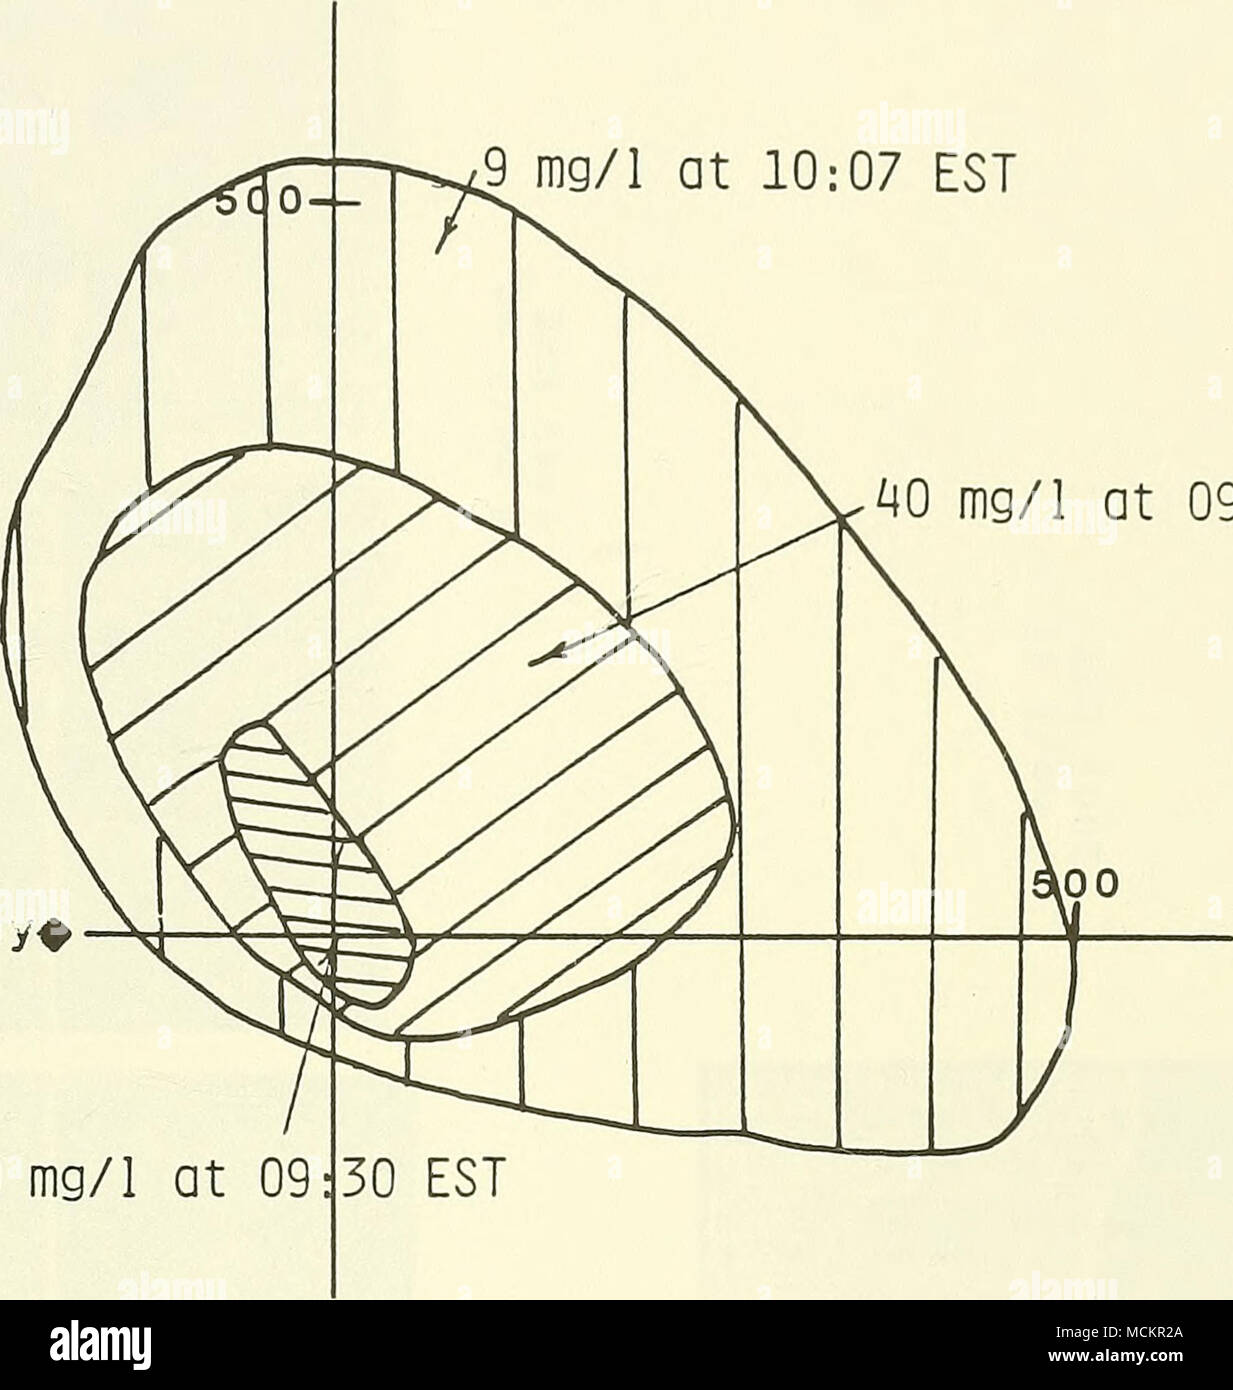 . Bei 09^5 EST 950 mg/1 Am 09 Abbildung 3-2. Ergebnisse der Plume Studie an der Rockland Deponie durchgeführt am 21. Mai 1985. Achsen zur Verfügung. Entfernungen in m. Stockfoto